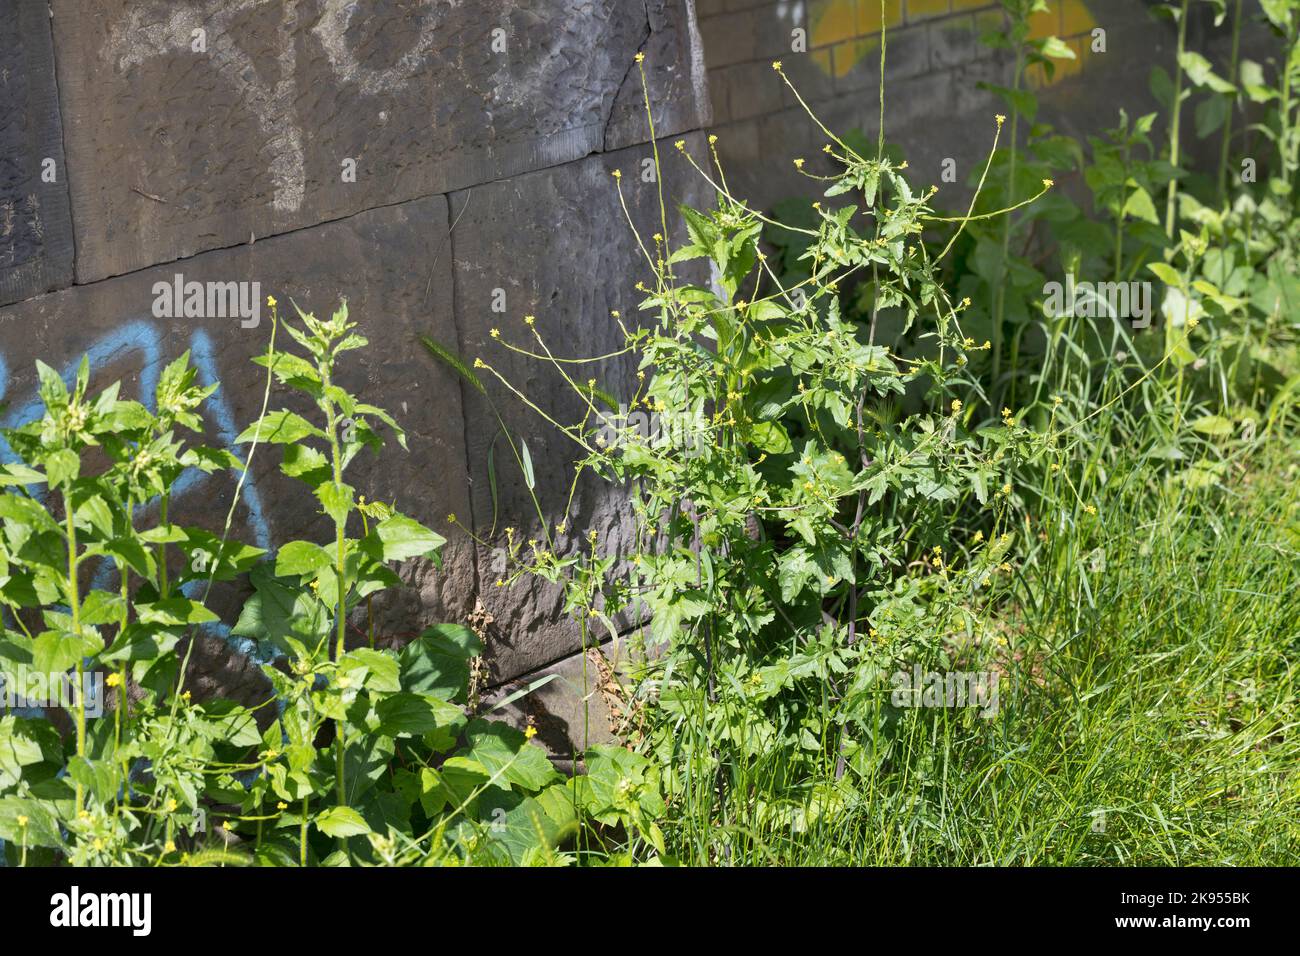 Senape comune di siepe, senape di siepe peloso (Sisymbarum officinale), cresce accanto ad un muro, Germania Foto Stock